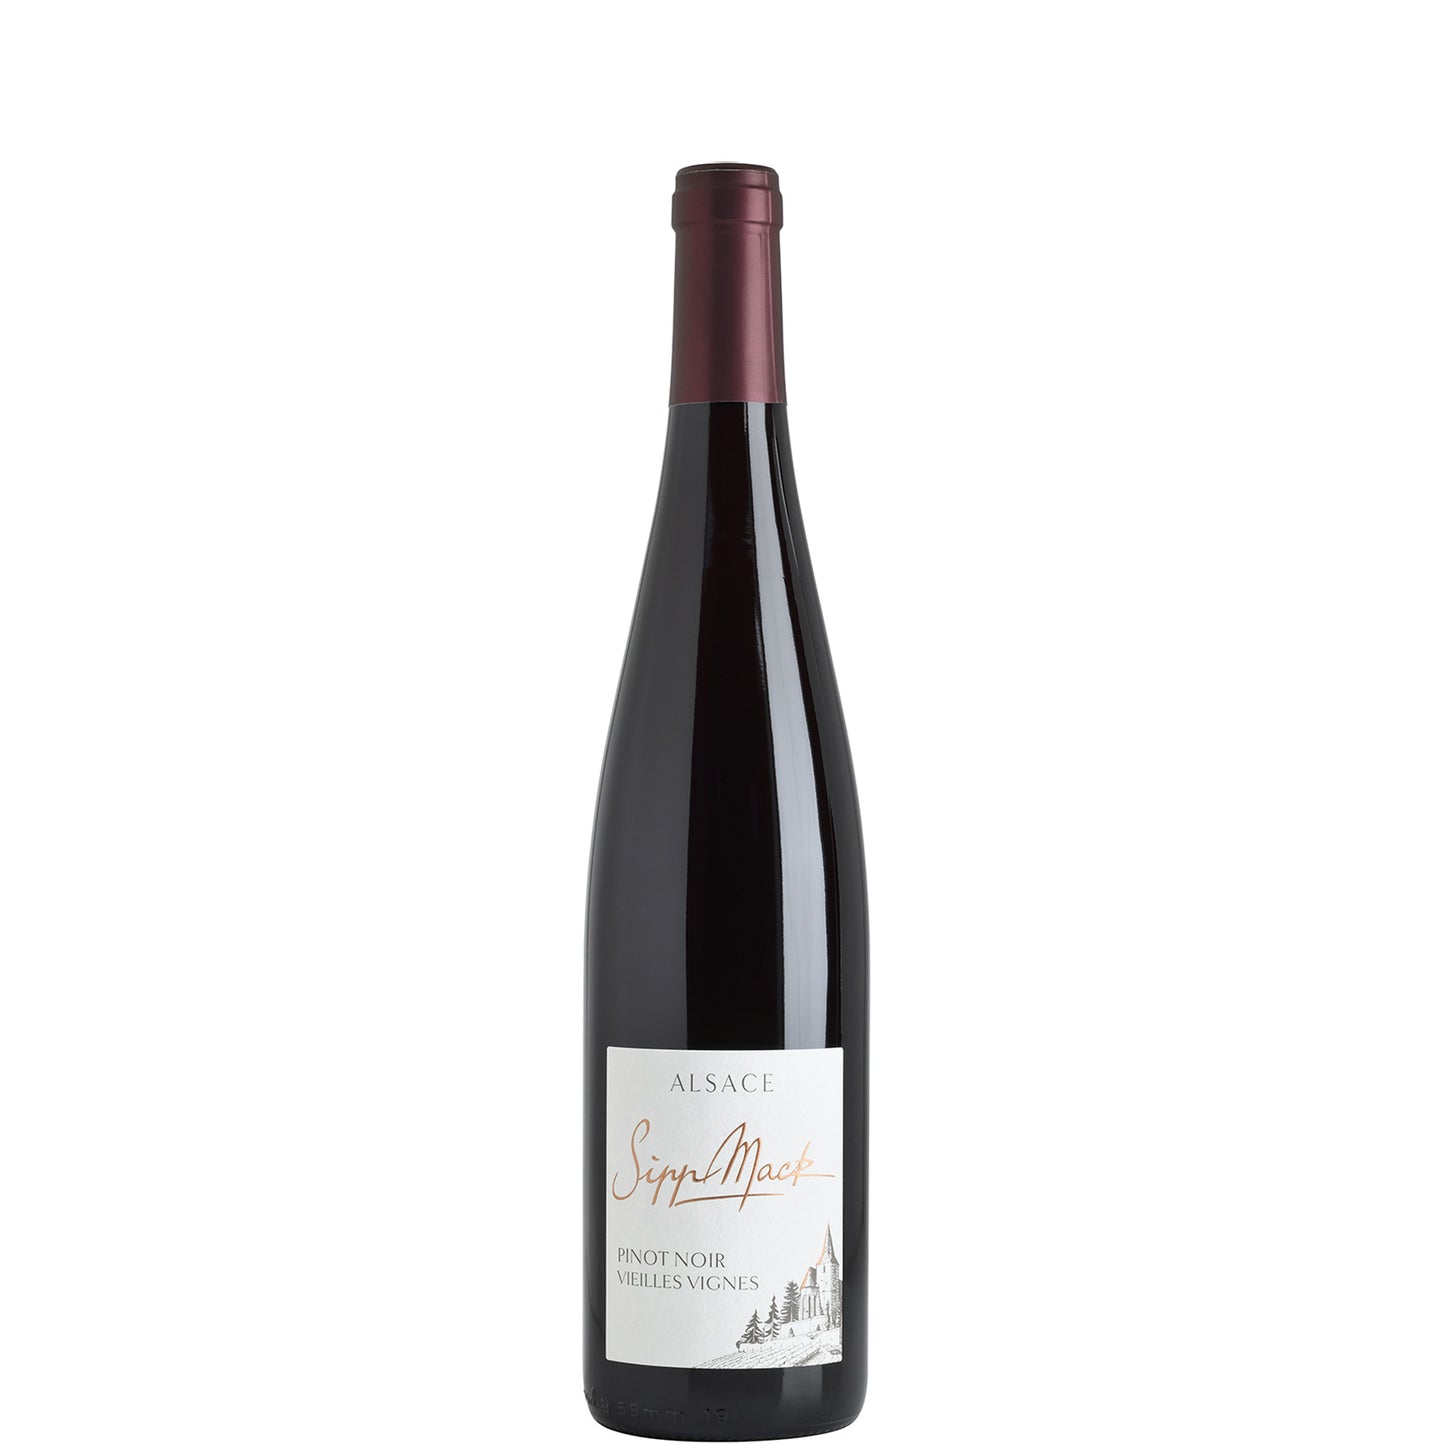 Domaine Sipp Mack, Pinot Noir Vieille Vignes, 2017 (7236)